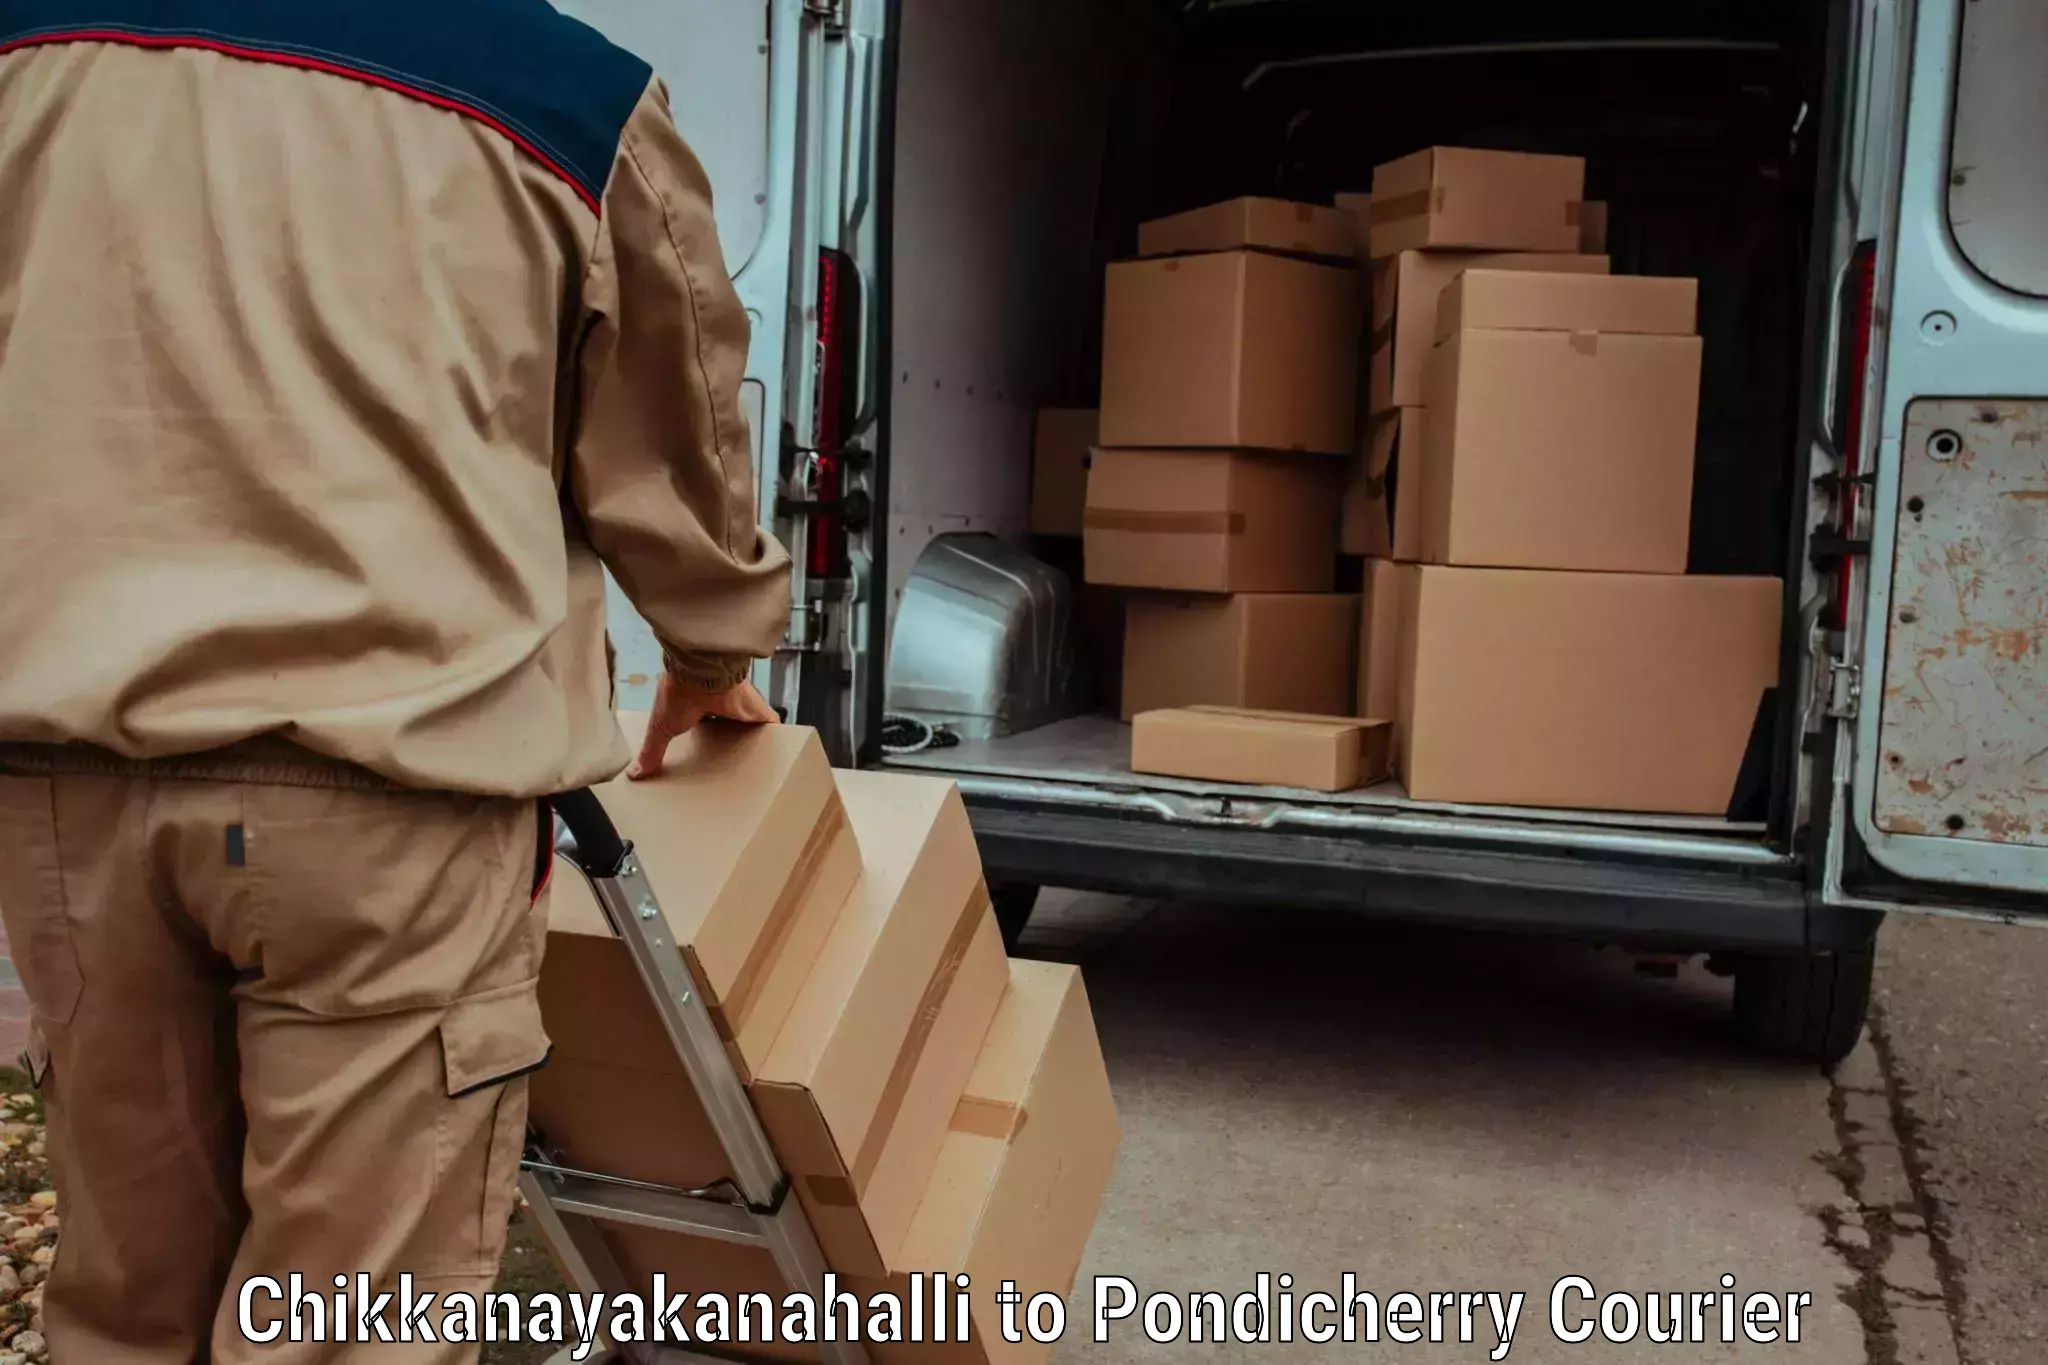 Doorstep delivery service Chikkanayakanahalli to NIT Puducherry